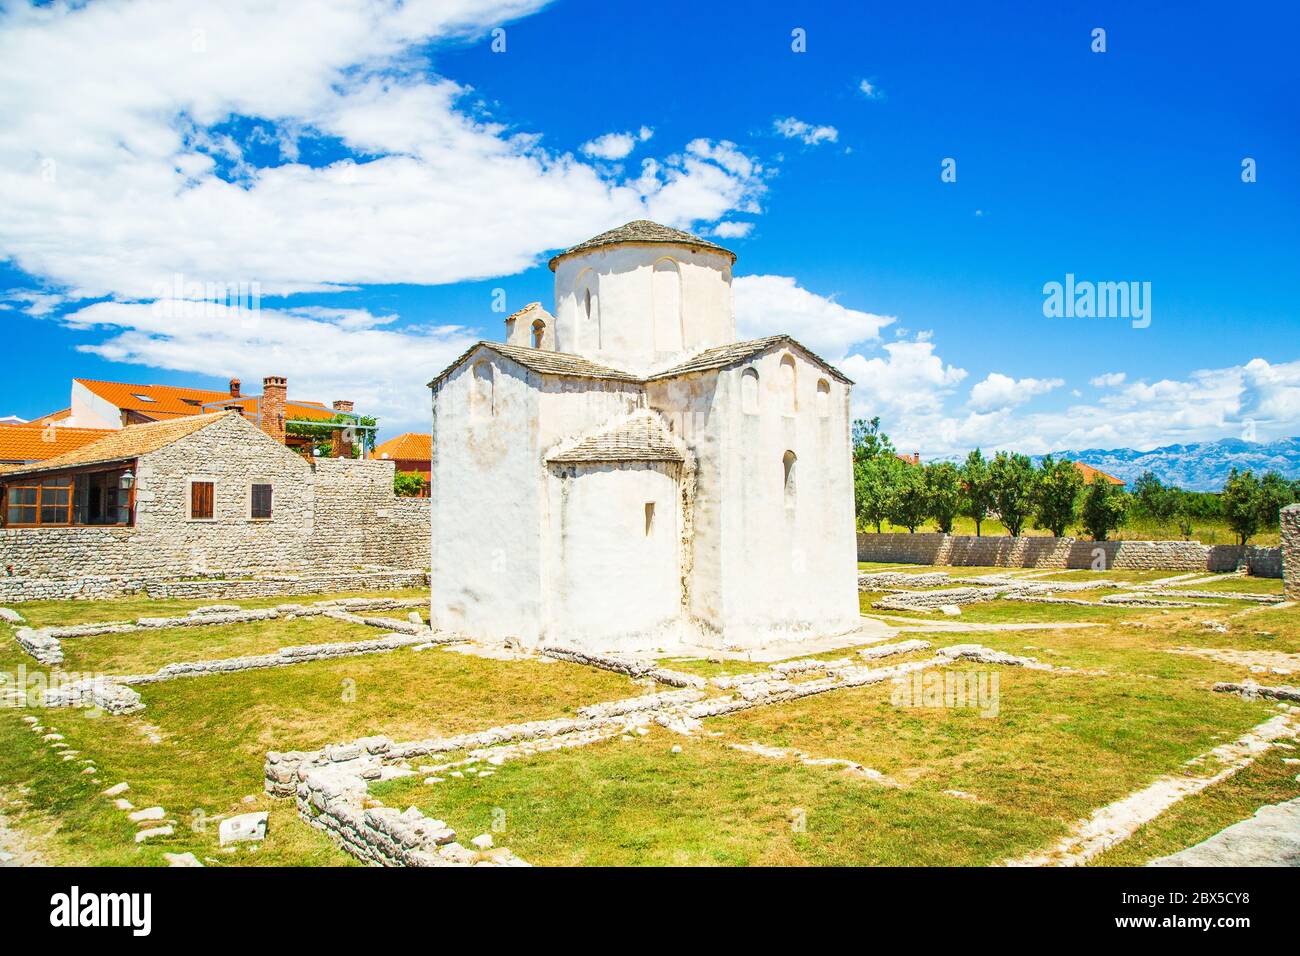 Croazia, chiesa di Santa Croce e sito archeologico nel centro storico di Nin in Dalmazia, popolare destinazione turistica Foto Stock